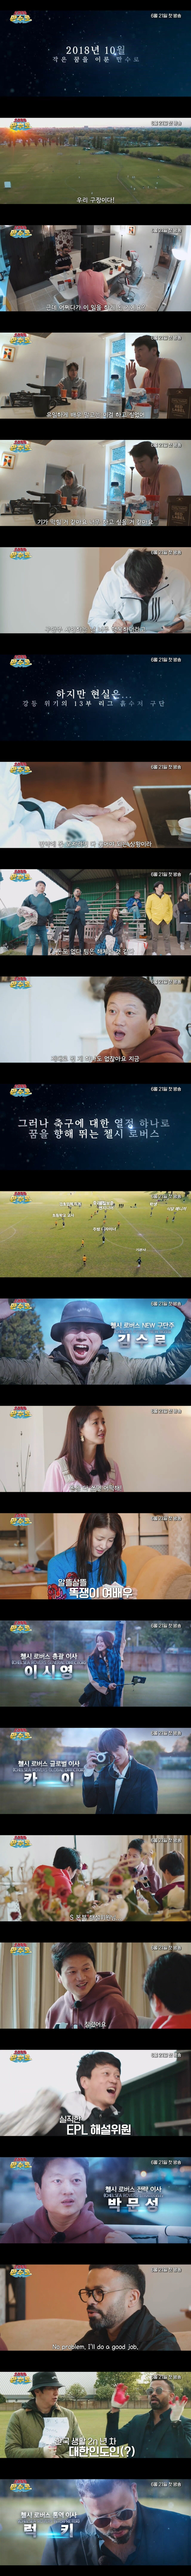 곧 첫방하는 KBS 축구 예능1-vert.jpg